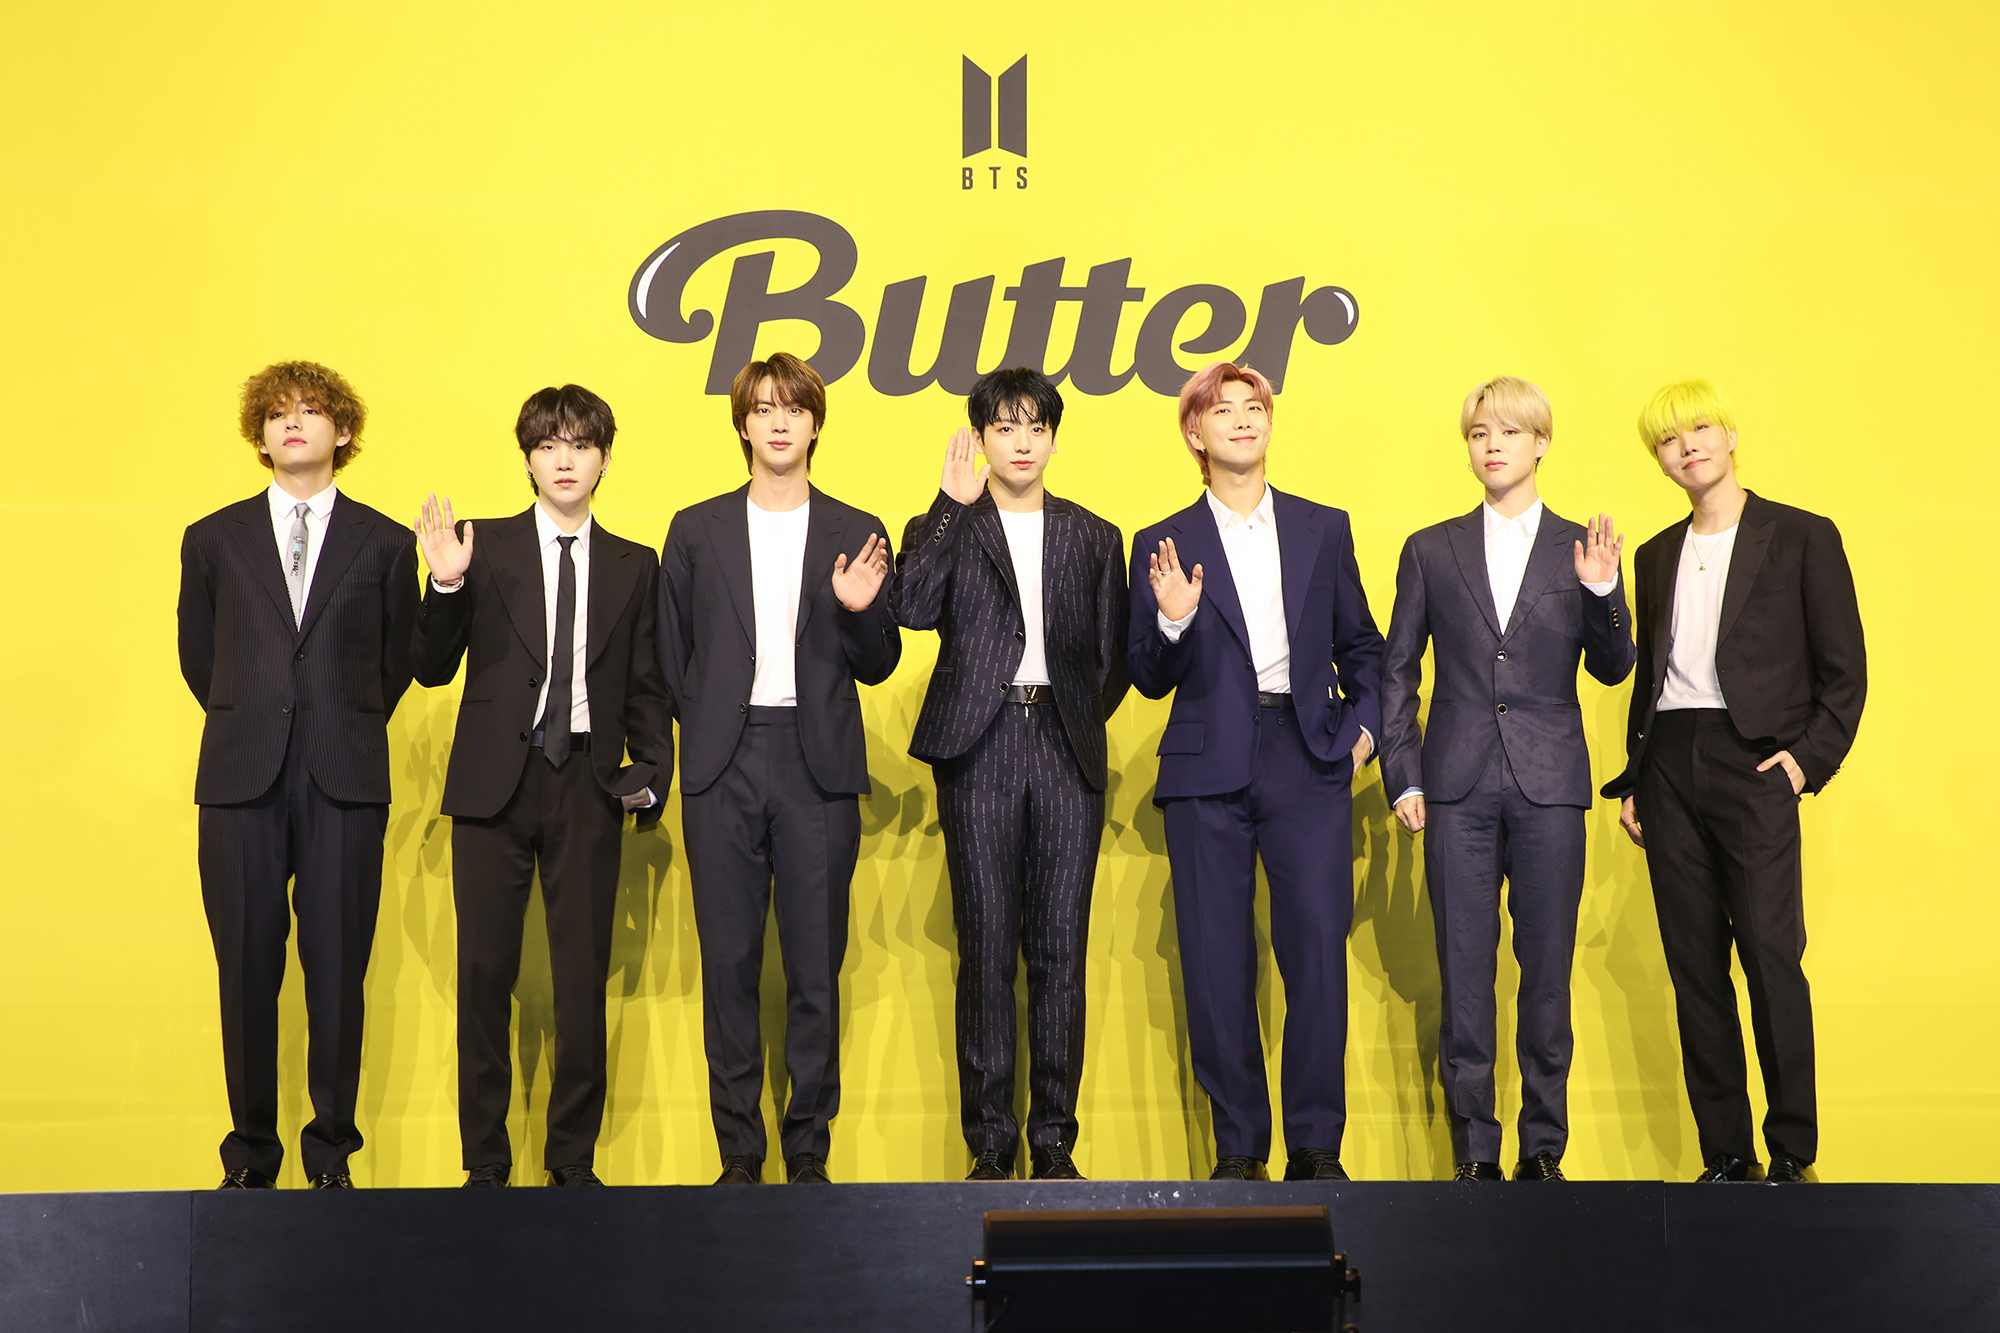 방탄소년단은 21일 열린 기자 간담회에서 “이번 여름을 신곡 ‘버터’와 함께 즐겁게 보내셨으면 한다”는 바람을 전했다. 빅히트 뮤직 제공